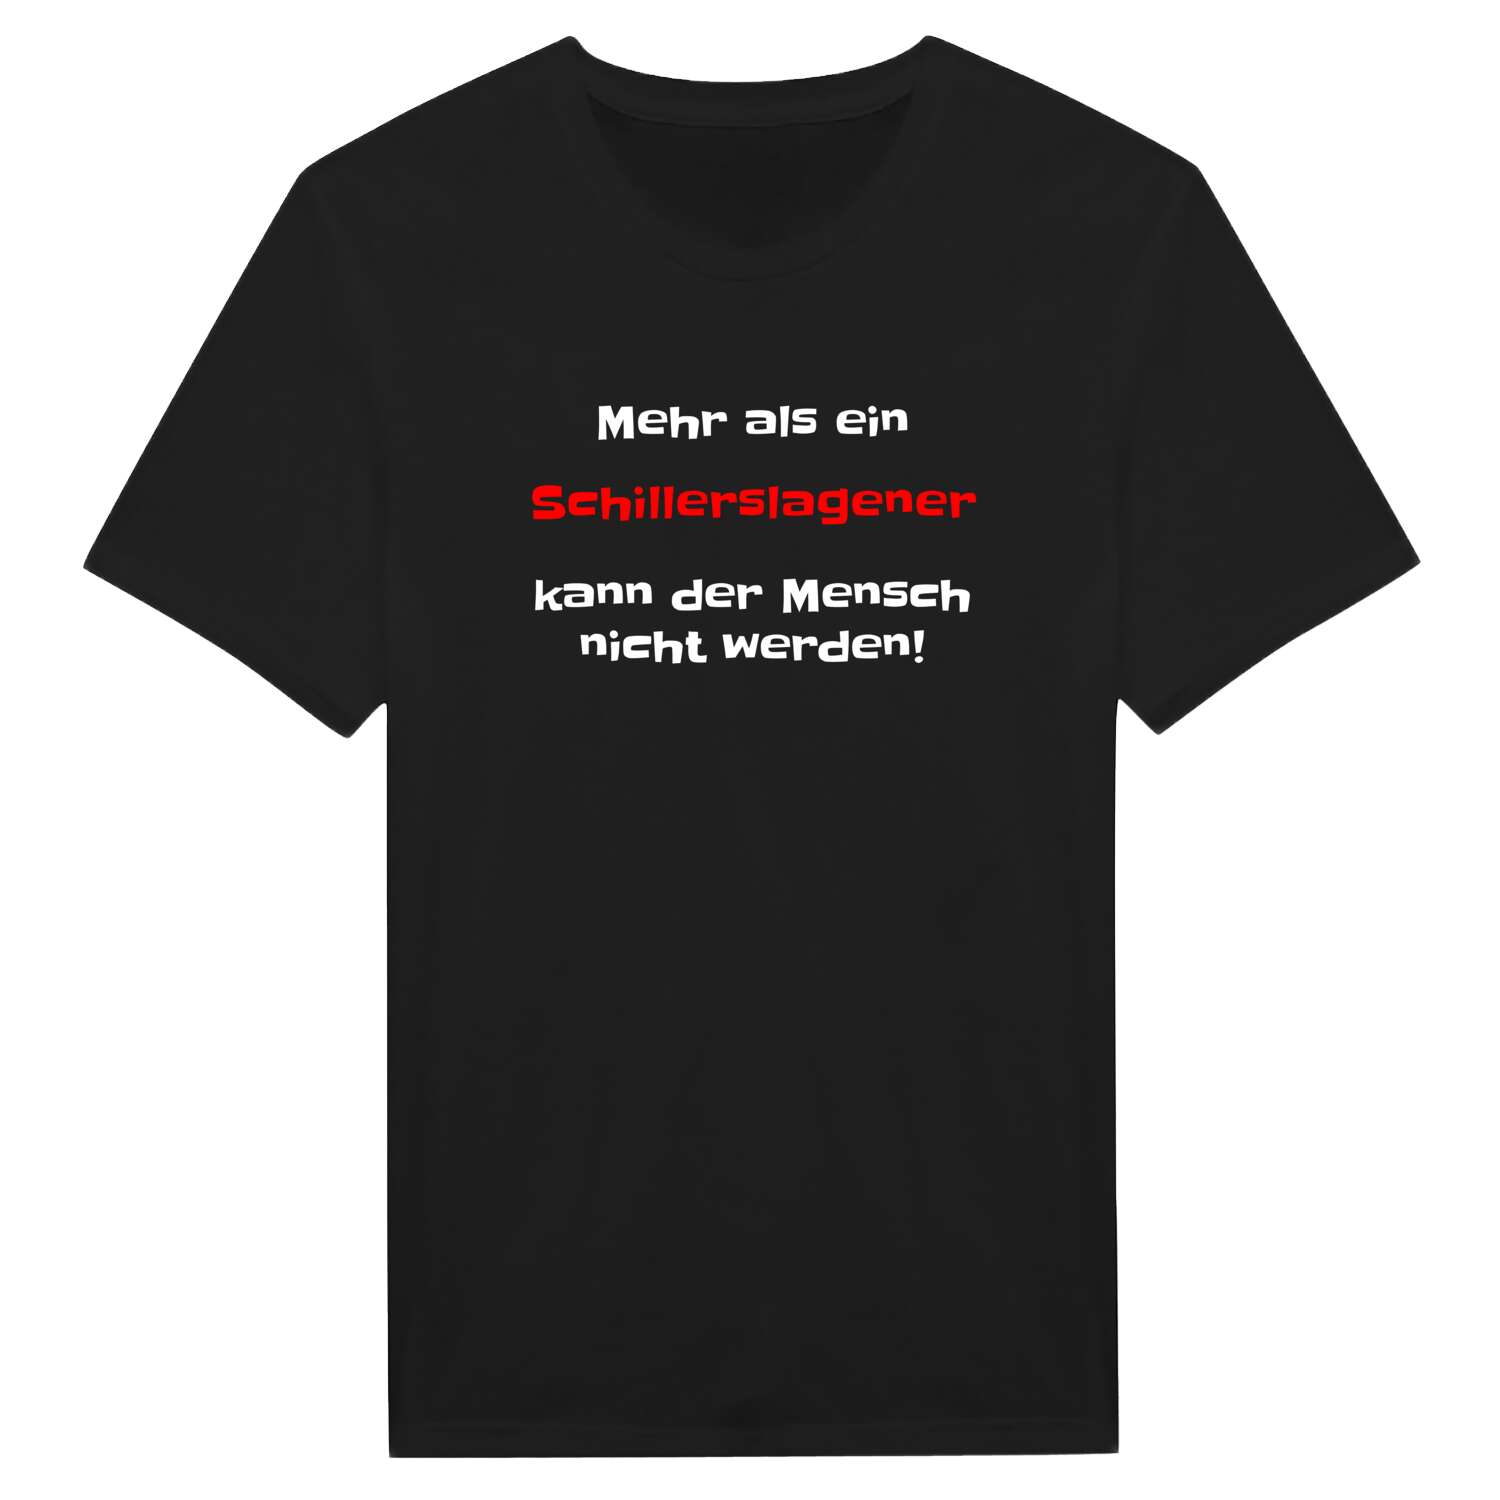 Schillerslage T-Shirt »Mehr als ein«